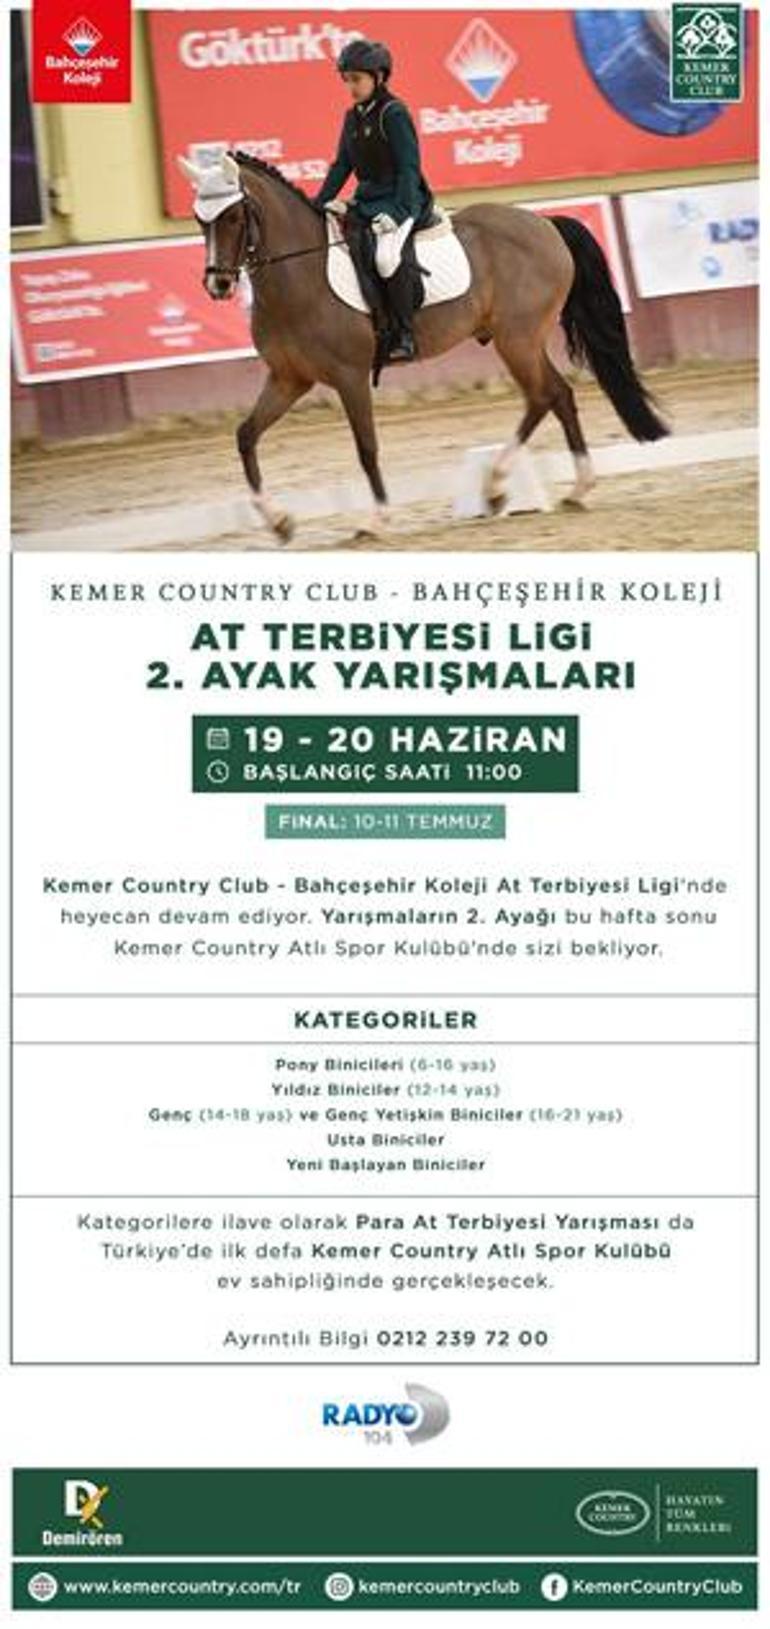 Kemer Country Club - Bahçeşehir Koleji At Terbiyesi Ligi Yarışmaları 19-20 haziran tarihlerinde 2. Ayak müsabakaları ile devam ediyor